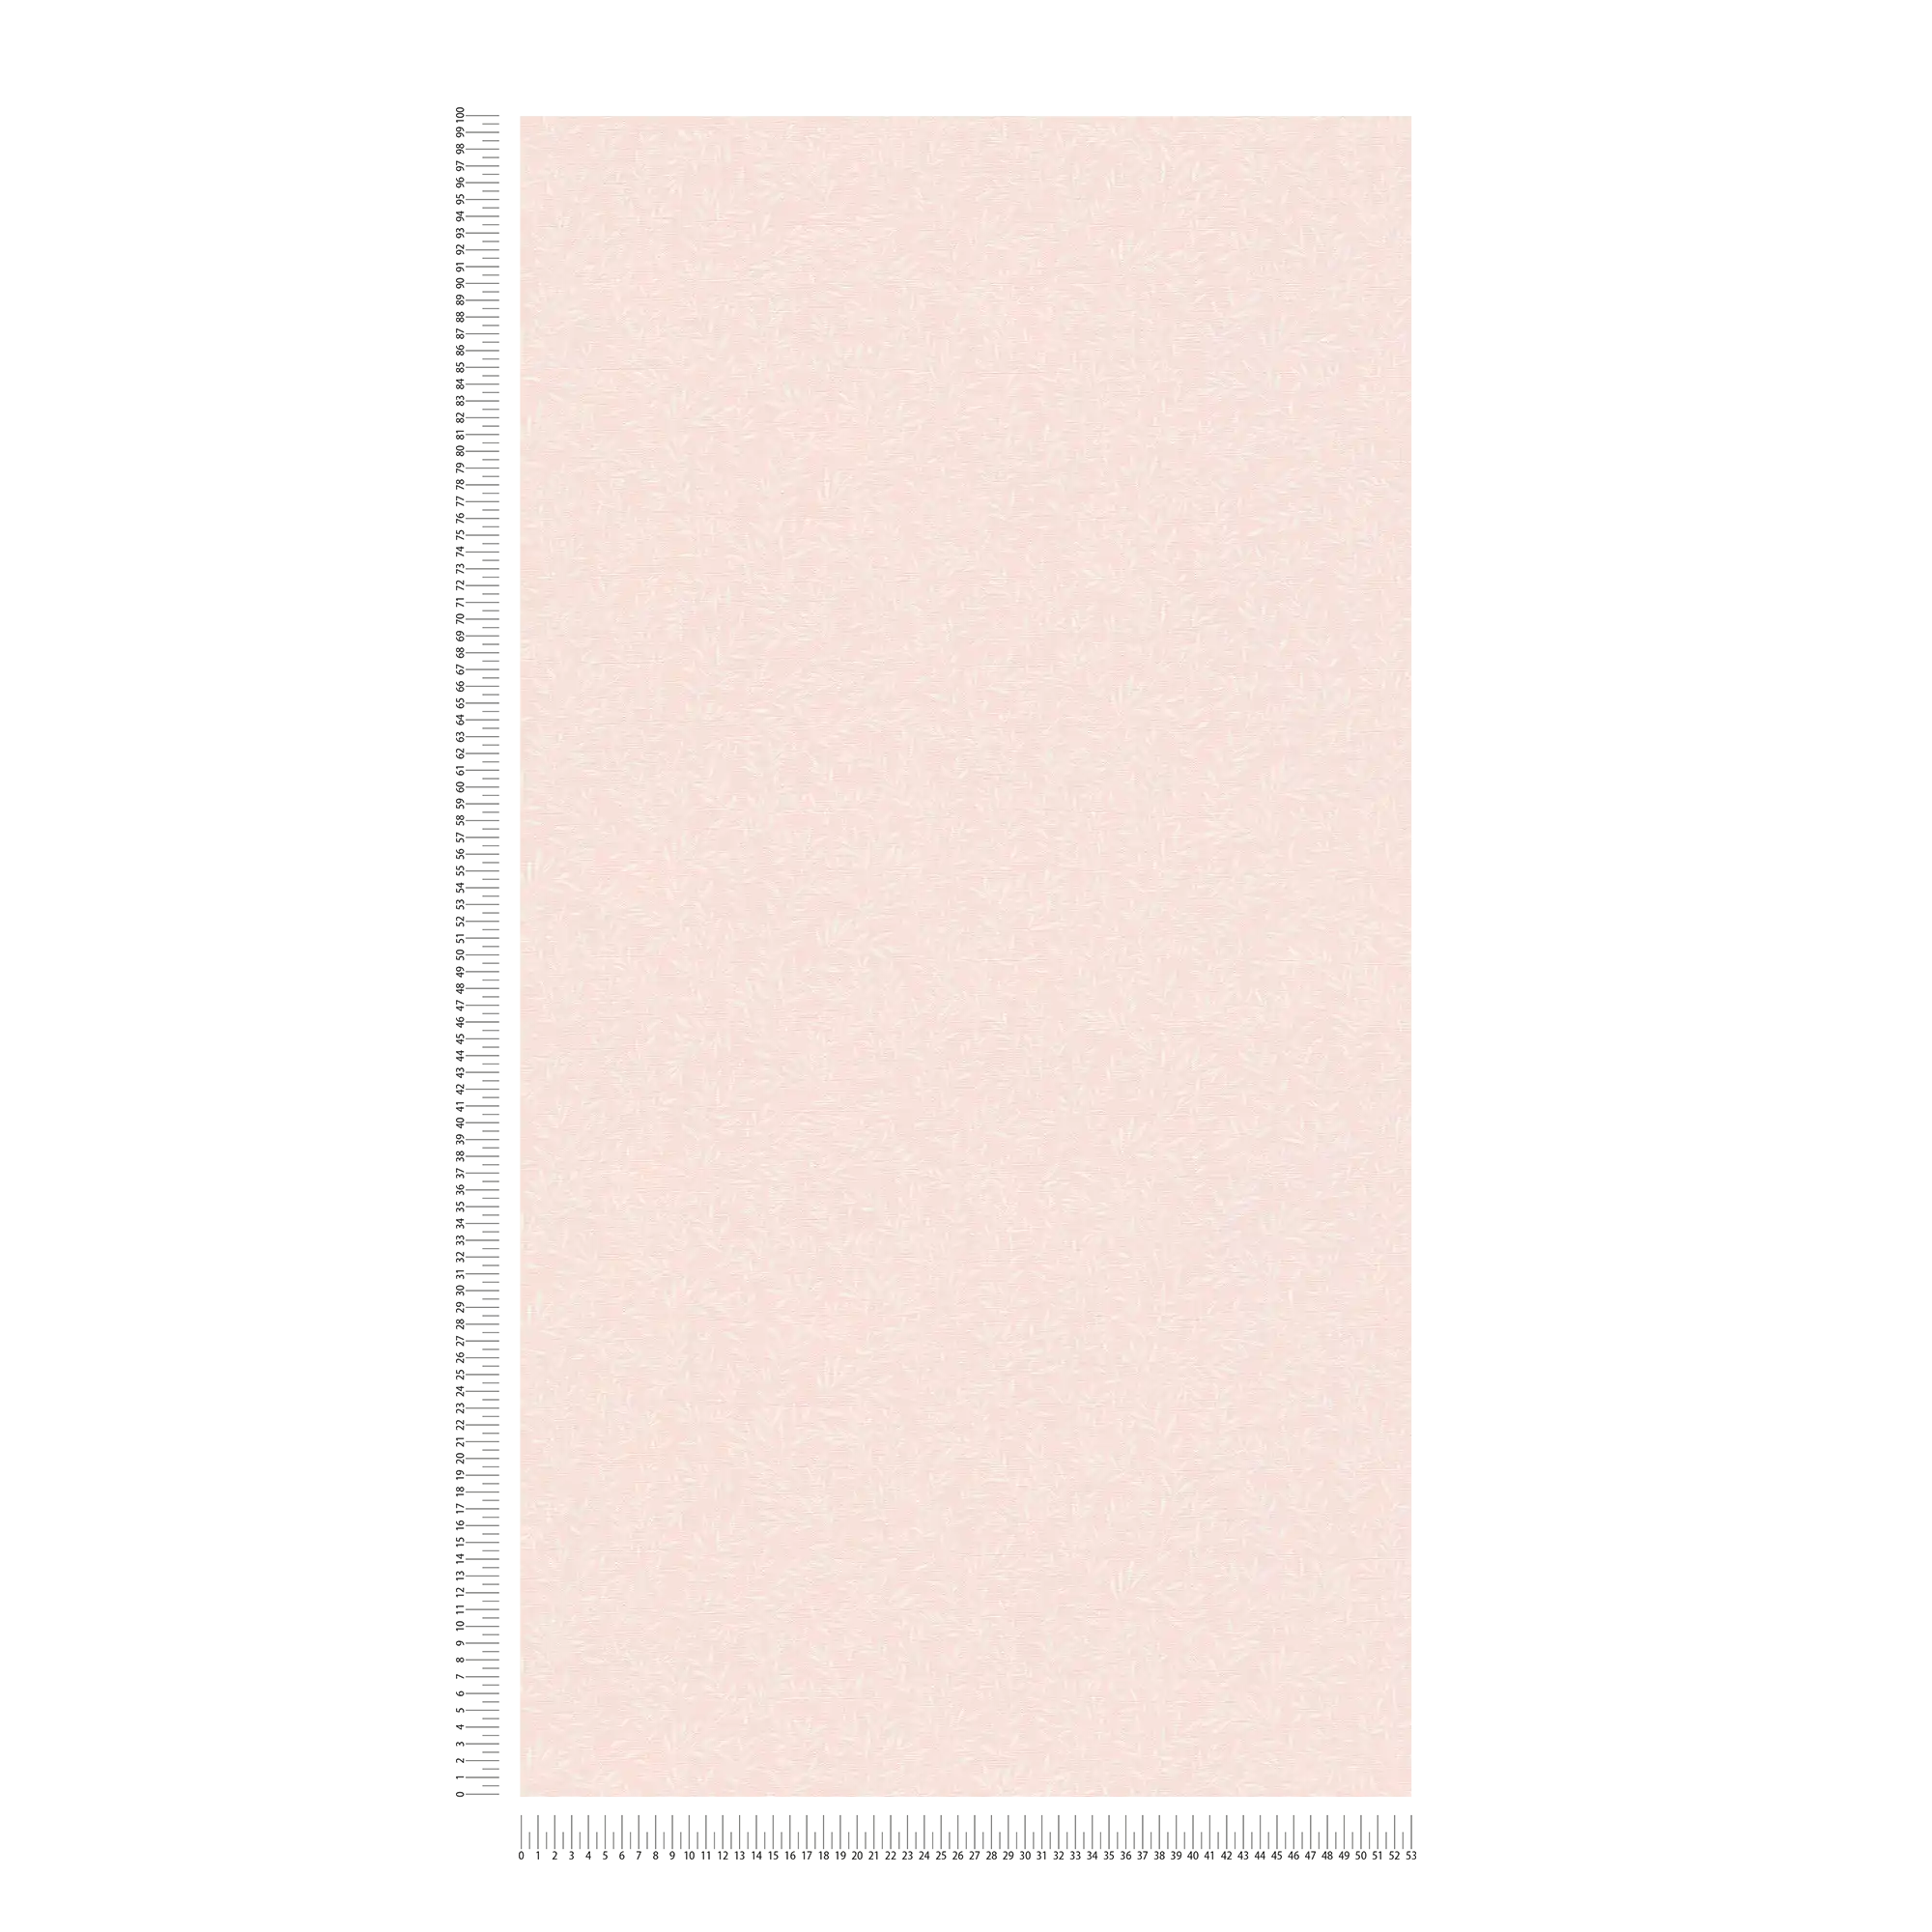             Landhuisbehang met rankenpatroon - roze, wit
        